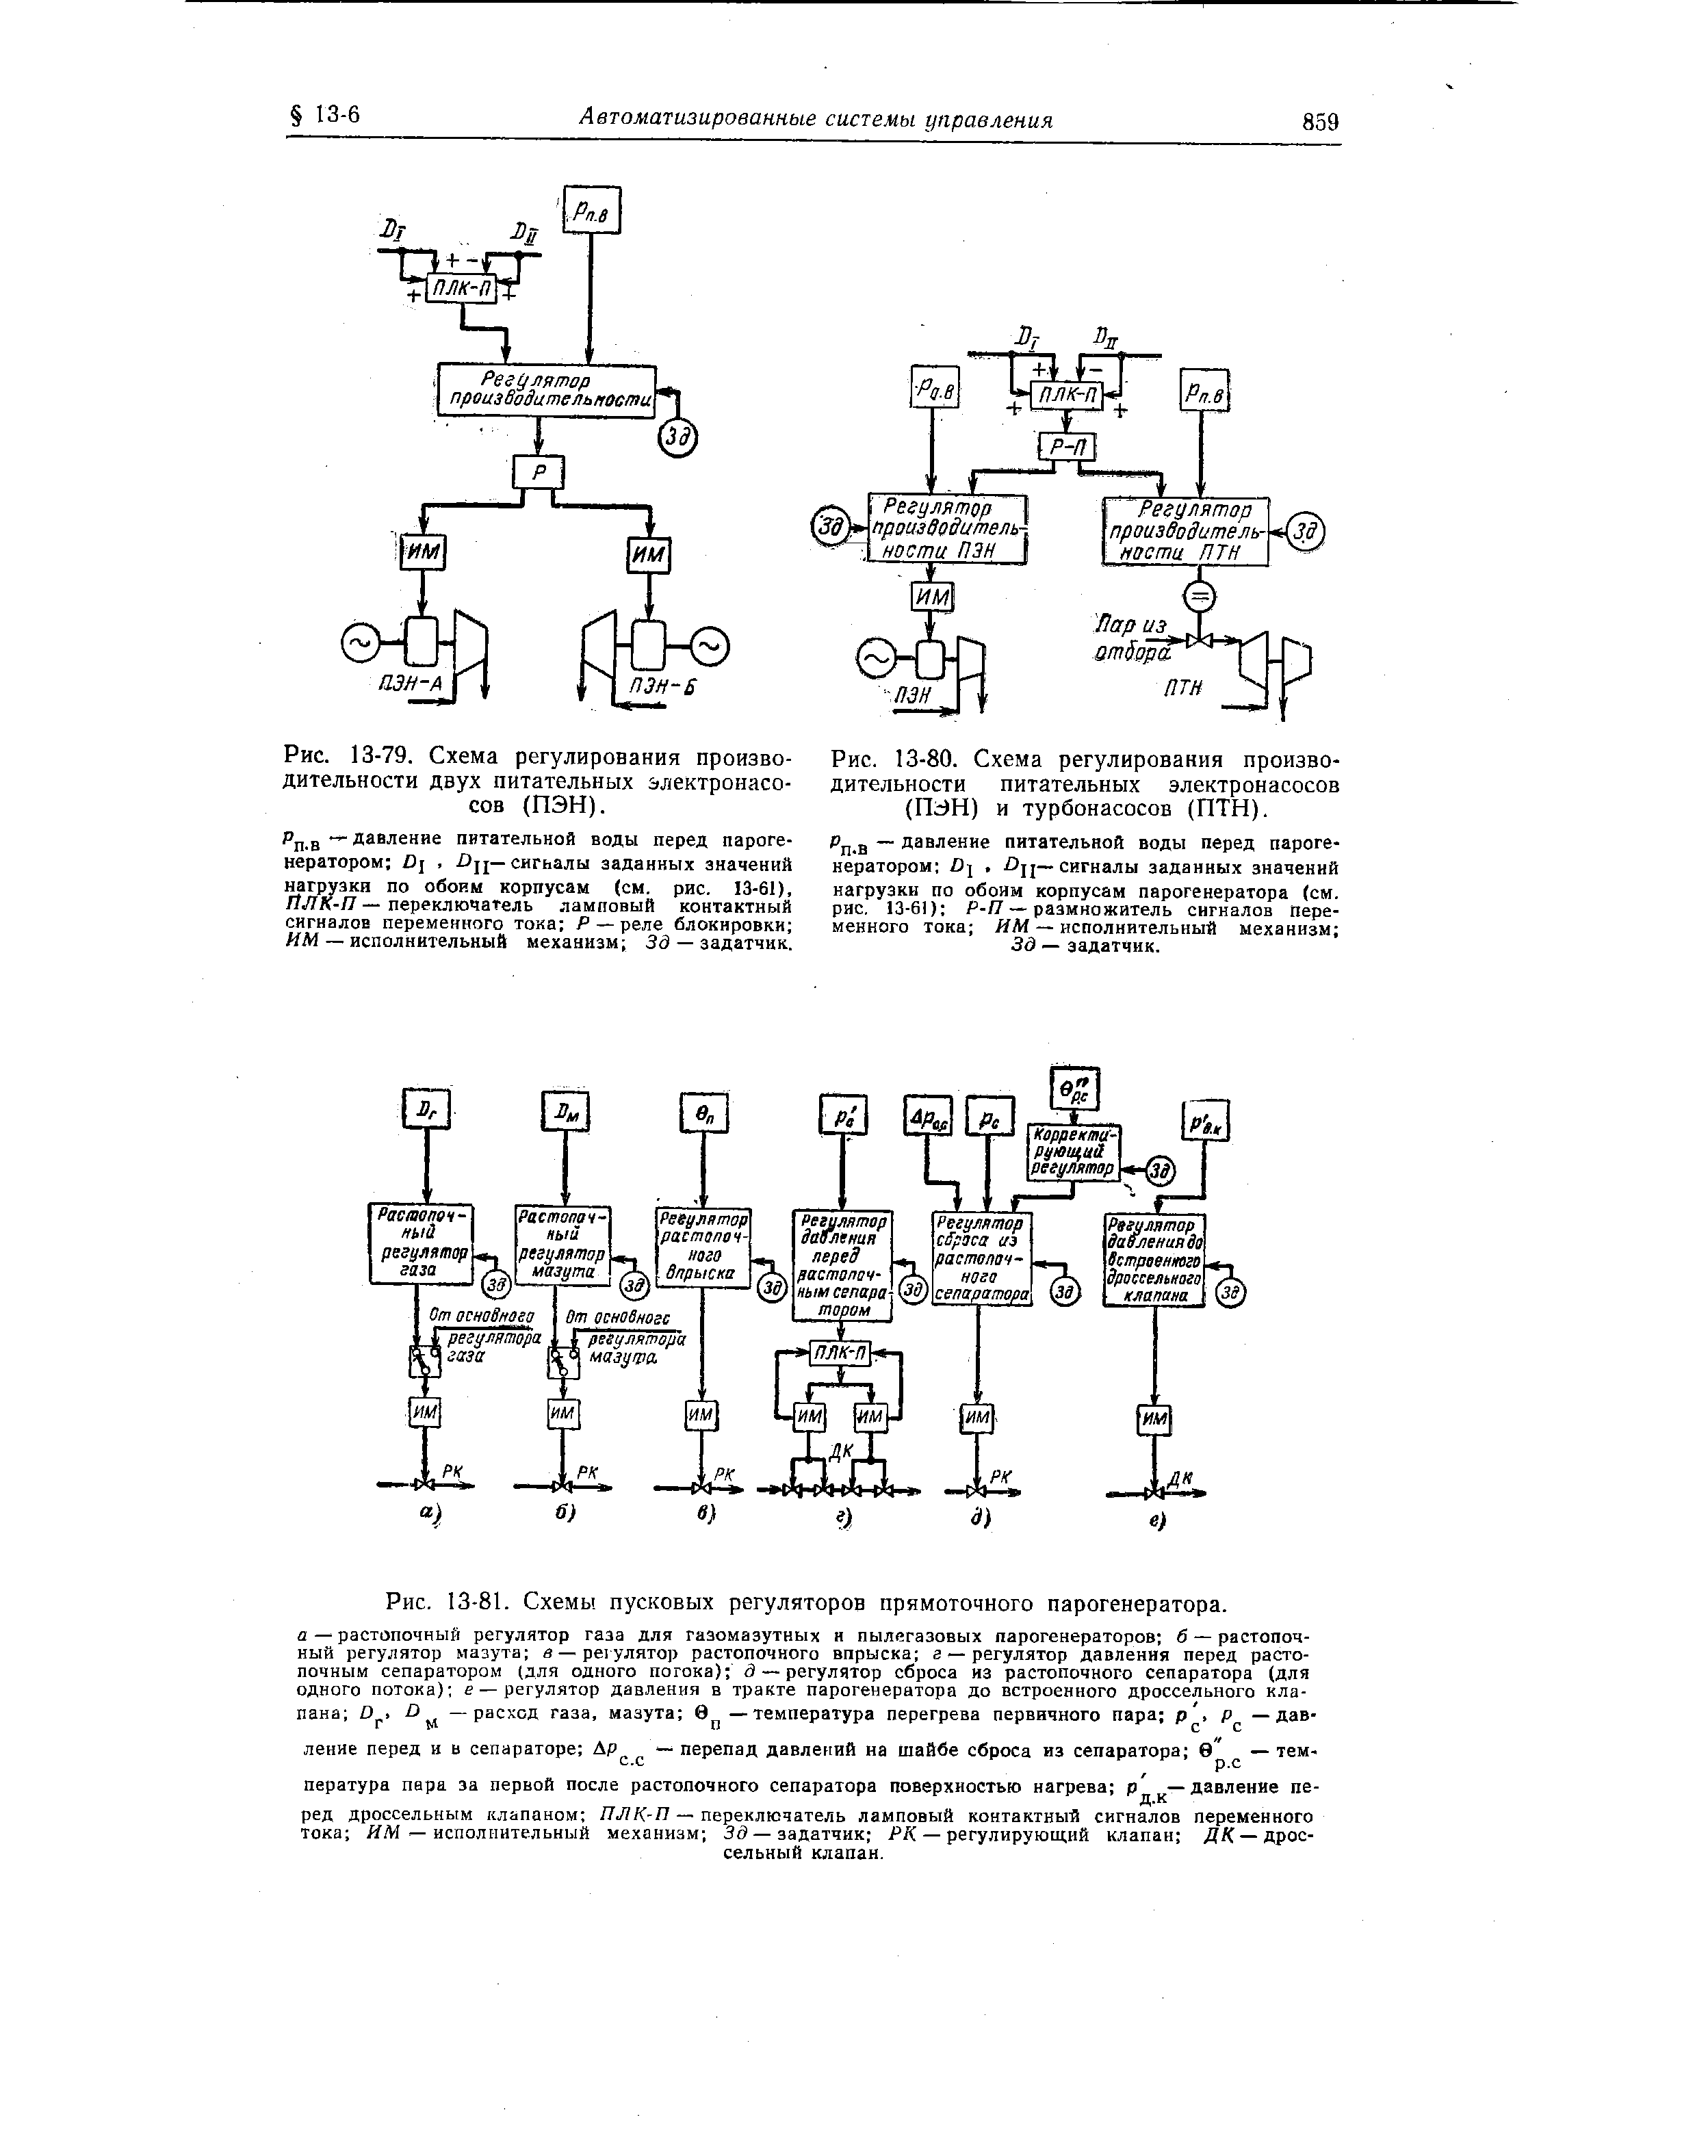 Рис. 13-81. Схемы пусковых регуляторов прямоточного парогенератора.
